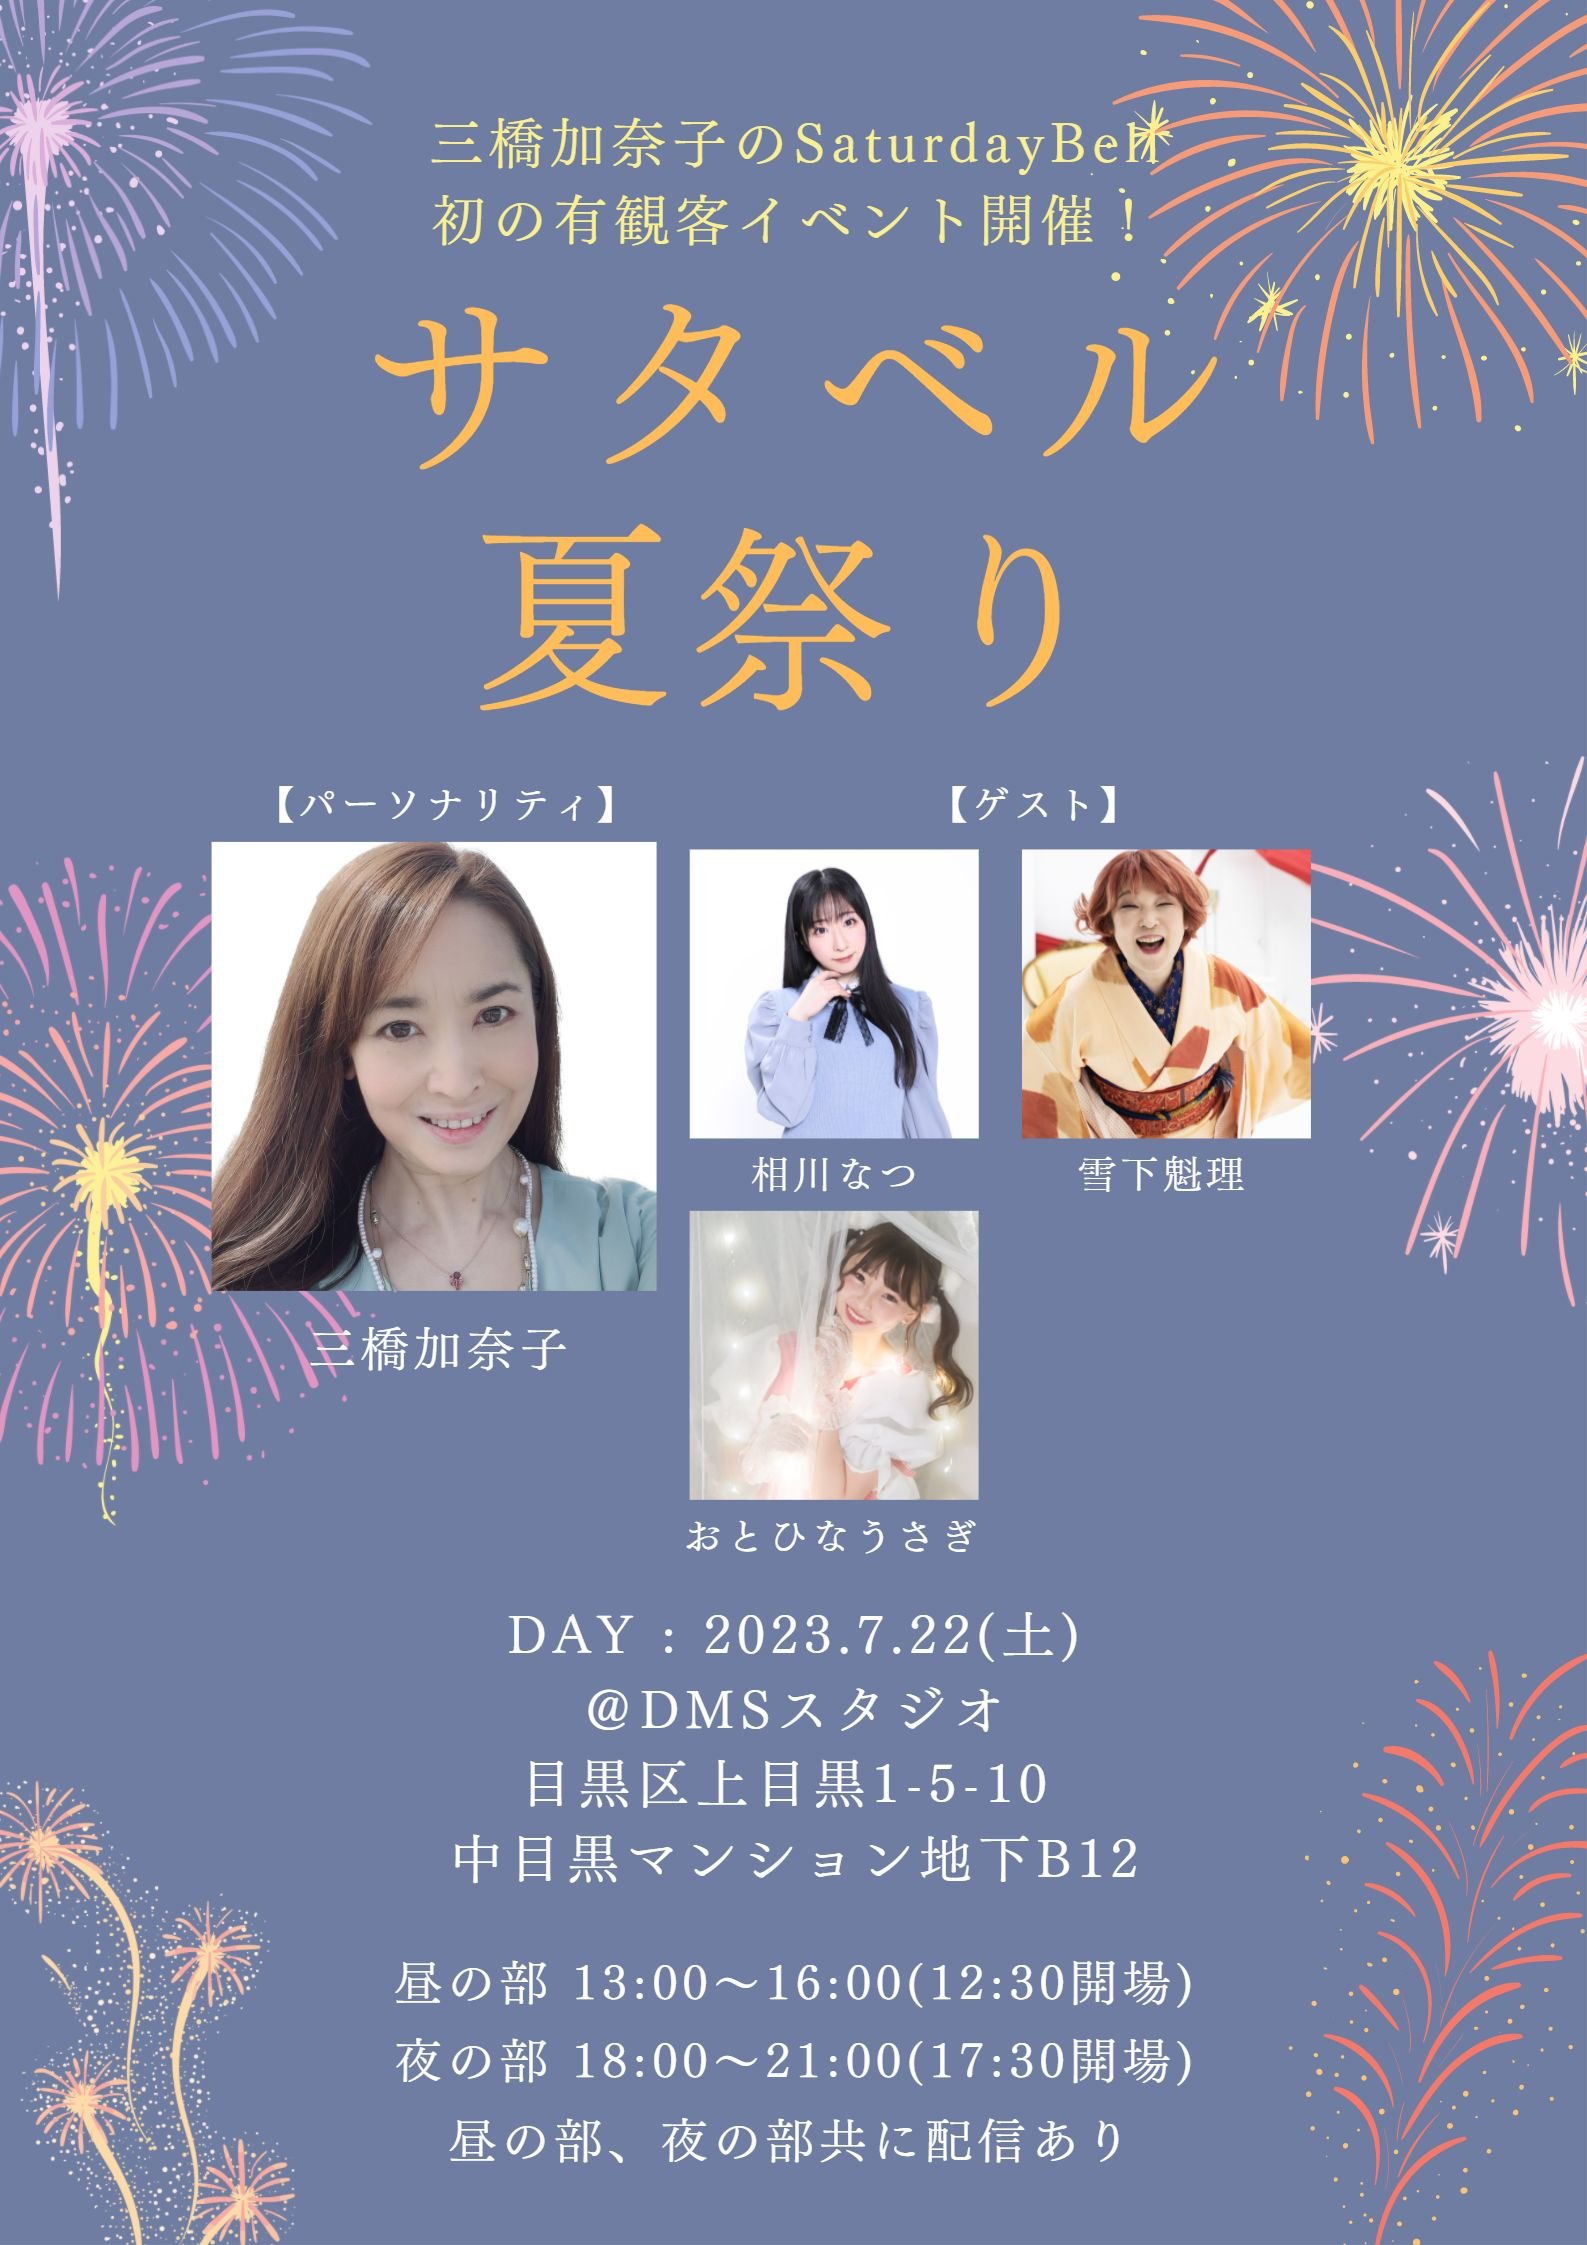 7月22日(土) 三橋加奈子のSaturday Bell presents「サタベル夏祭り！」に出演します!!!